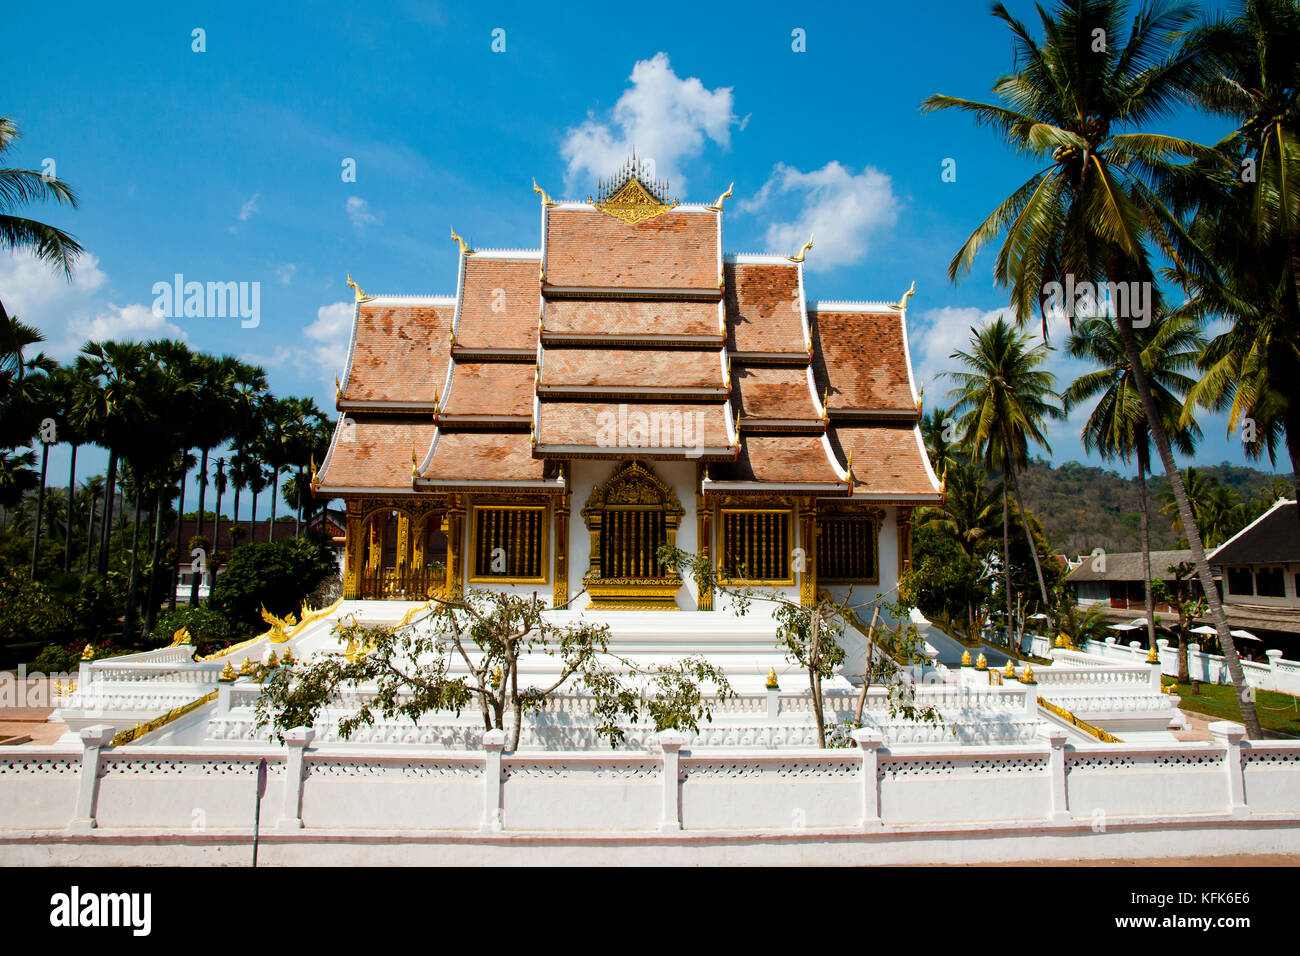 Haw Pha Bang Temple - Luang Prabang - Laos Stock Photo